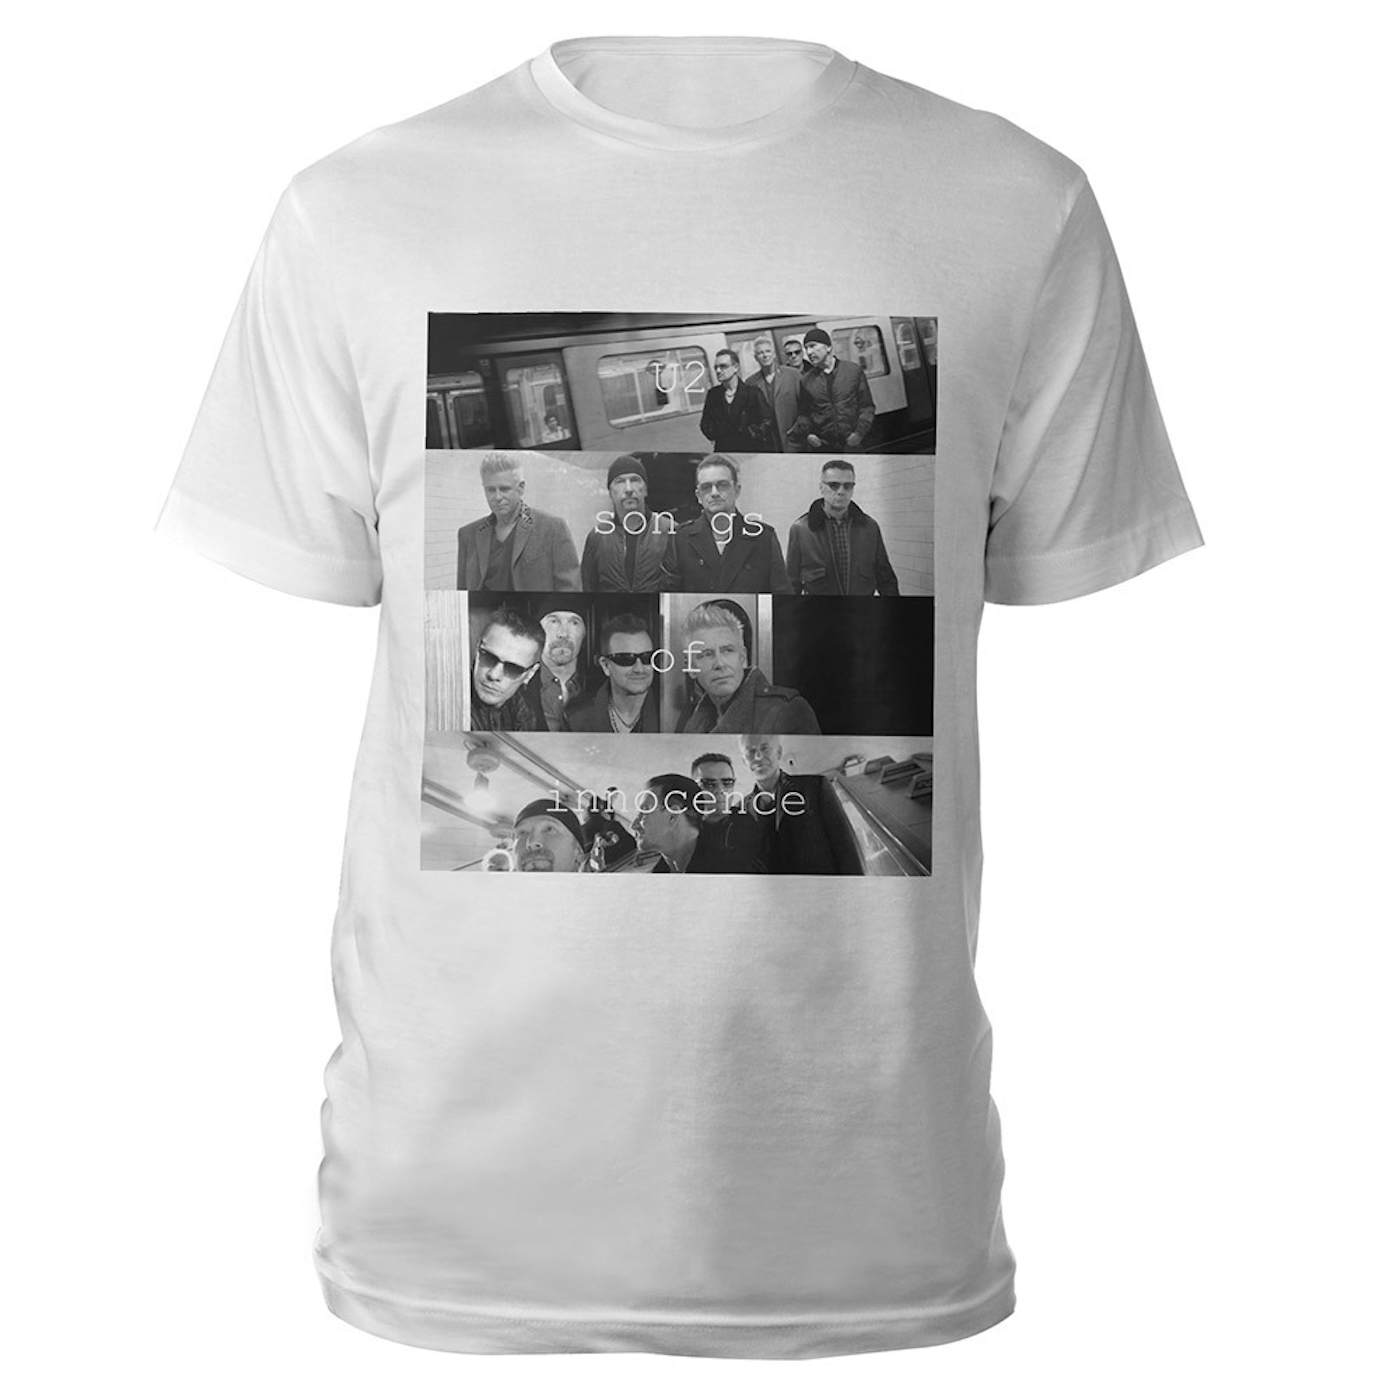 U2 Songs Of Innocence Multiple Photo T-shirt (White)